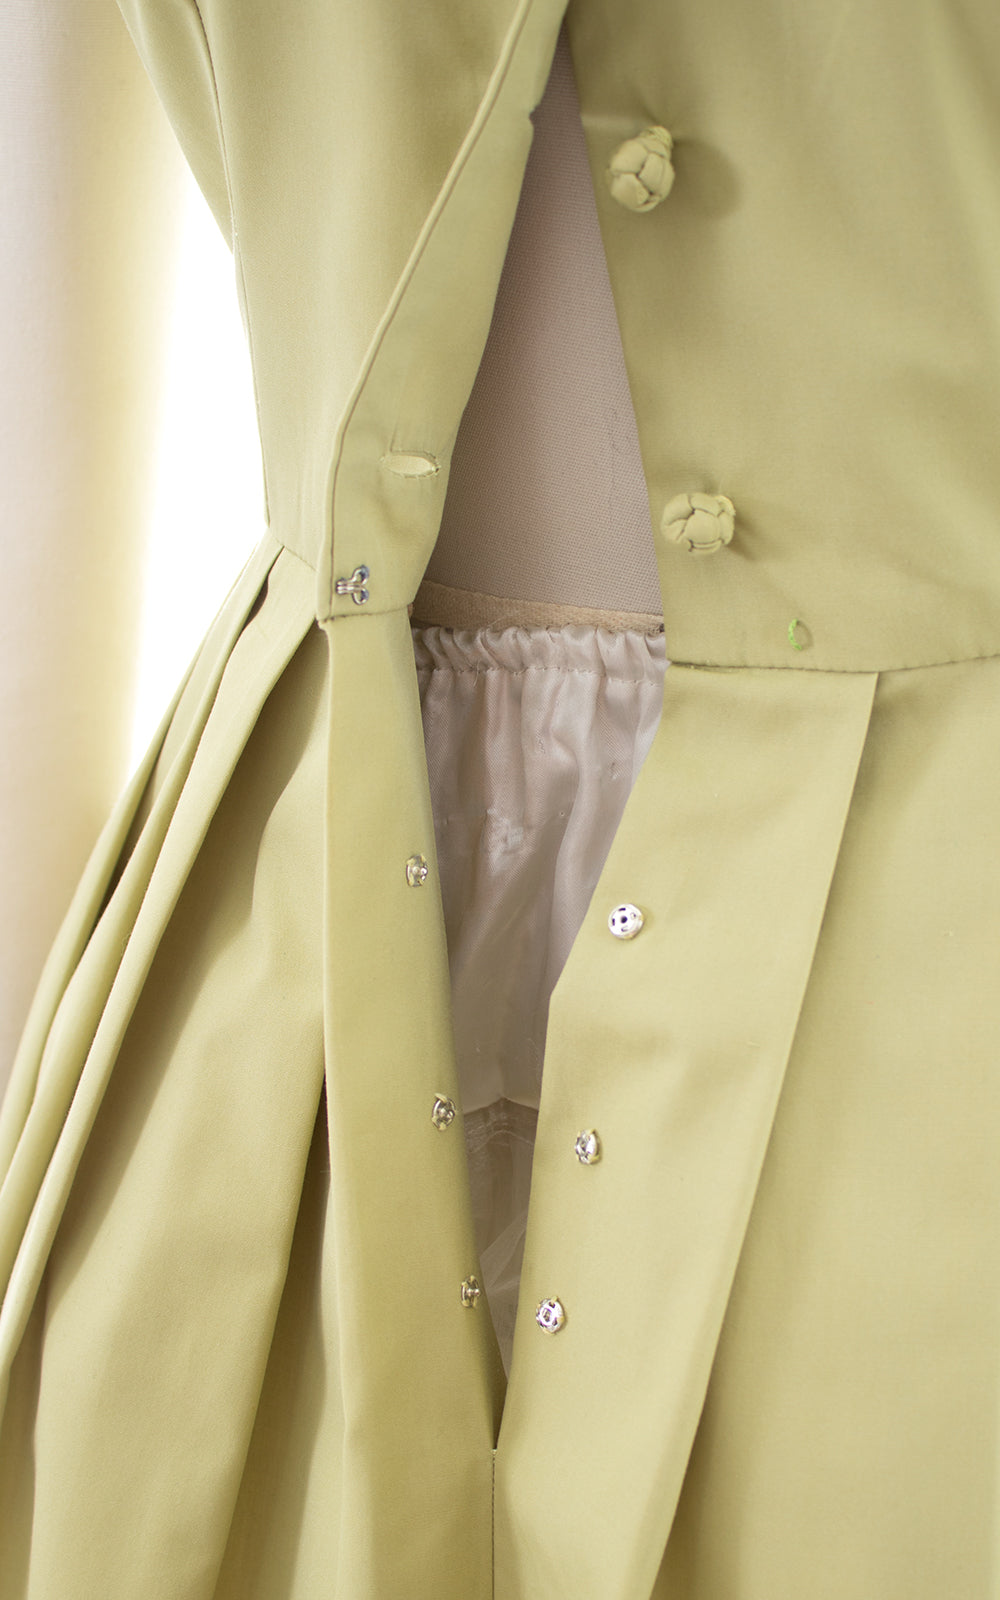 1950s Sage Green Cotton Shirtwaist Sundress